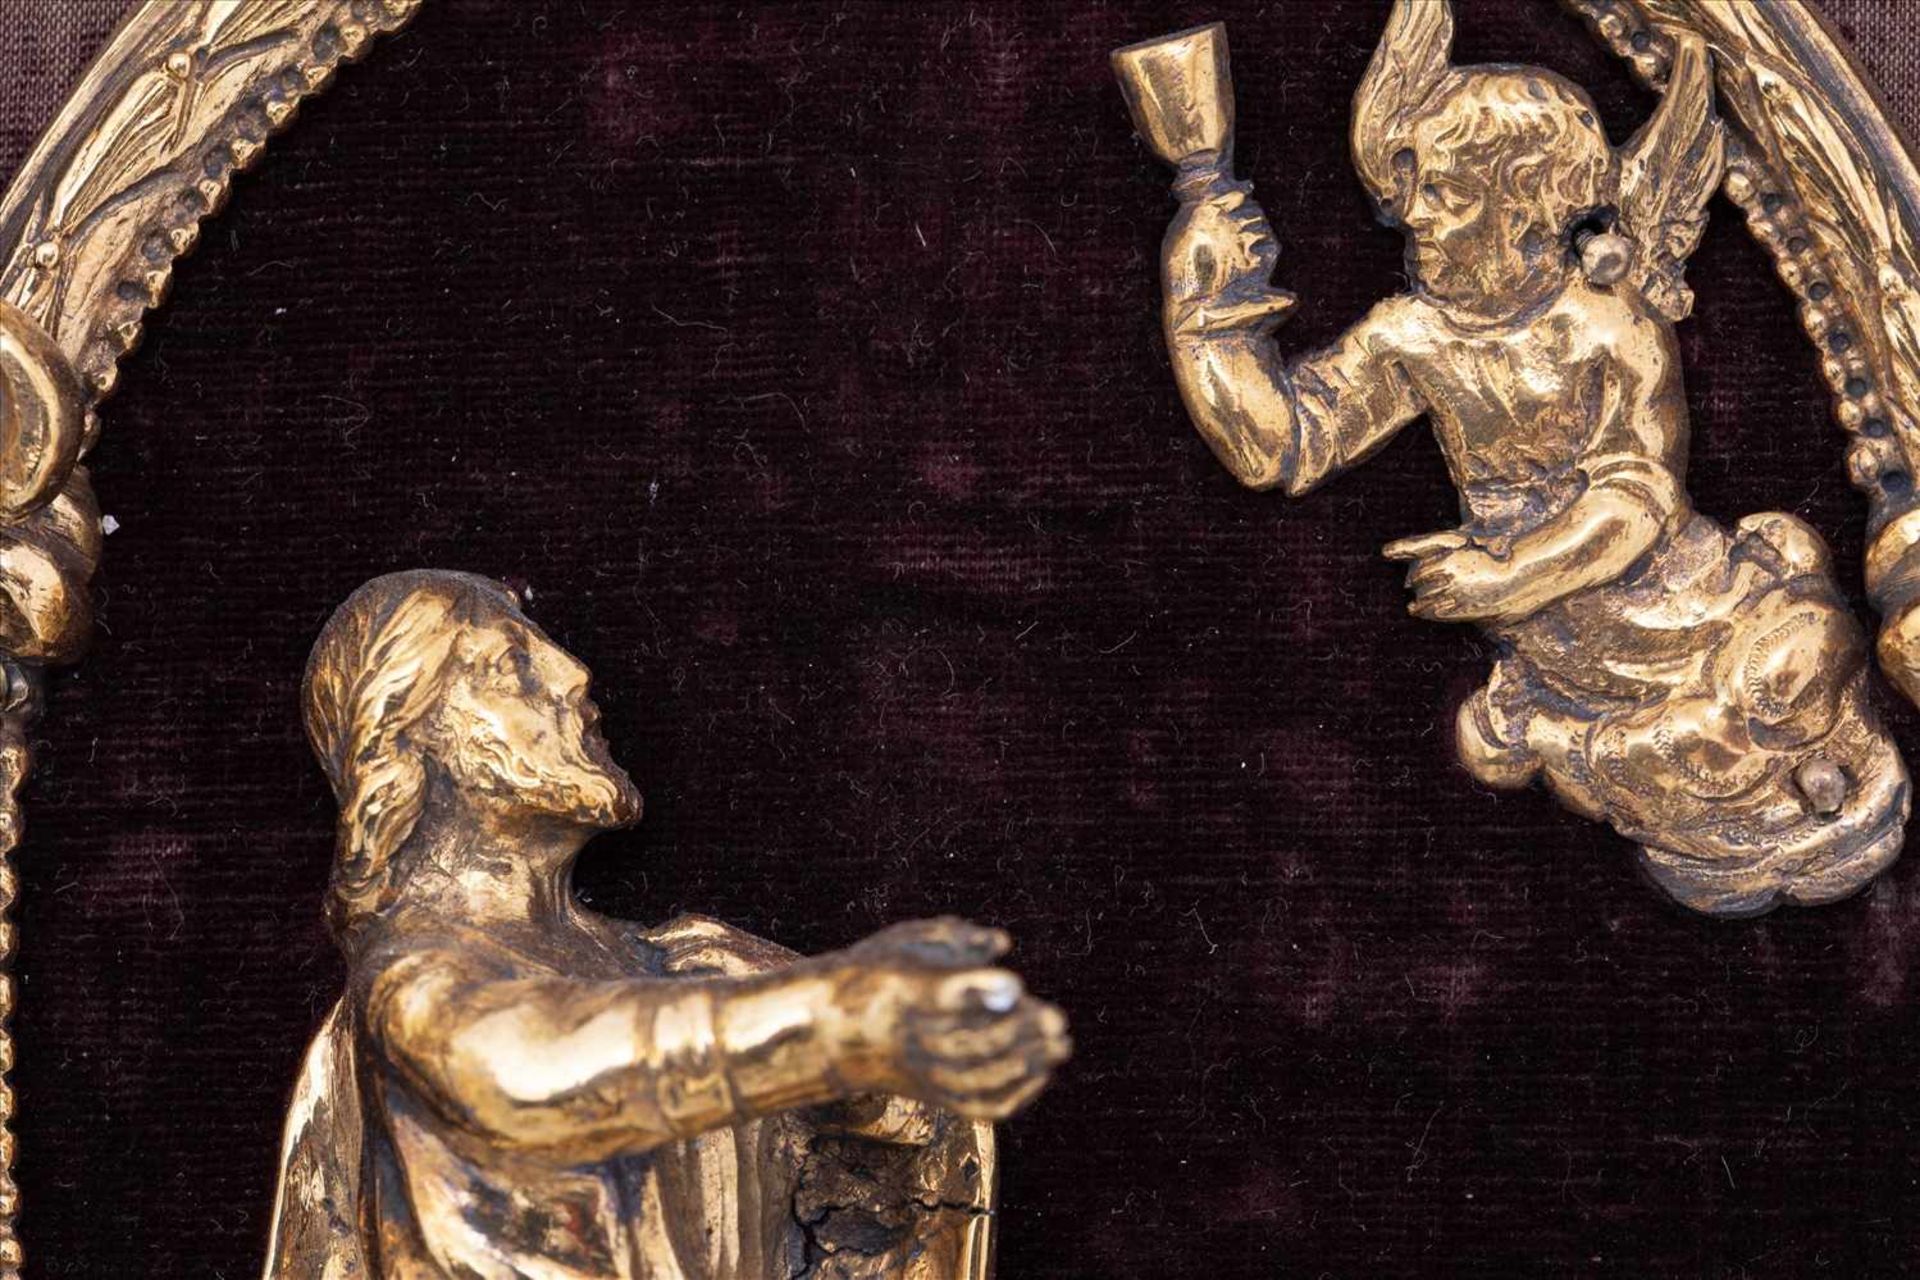 Barocker Hausaltar, Italien 17. Jh.Darstellung der Kreuzigung und Passion Christi, Bronze vergoldet, - Bild 8 aus 13